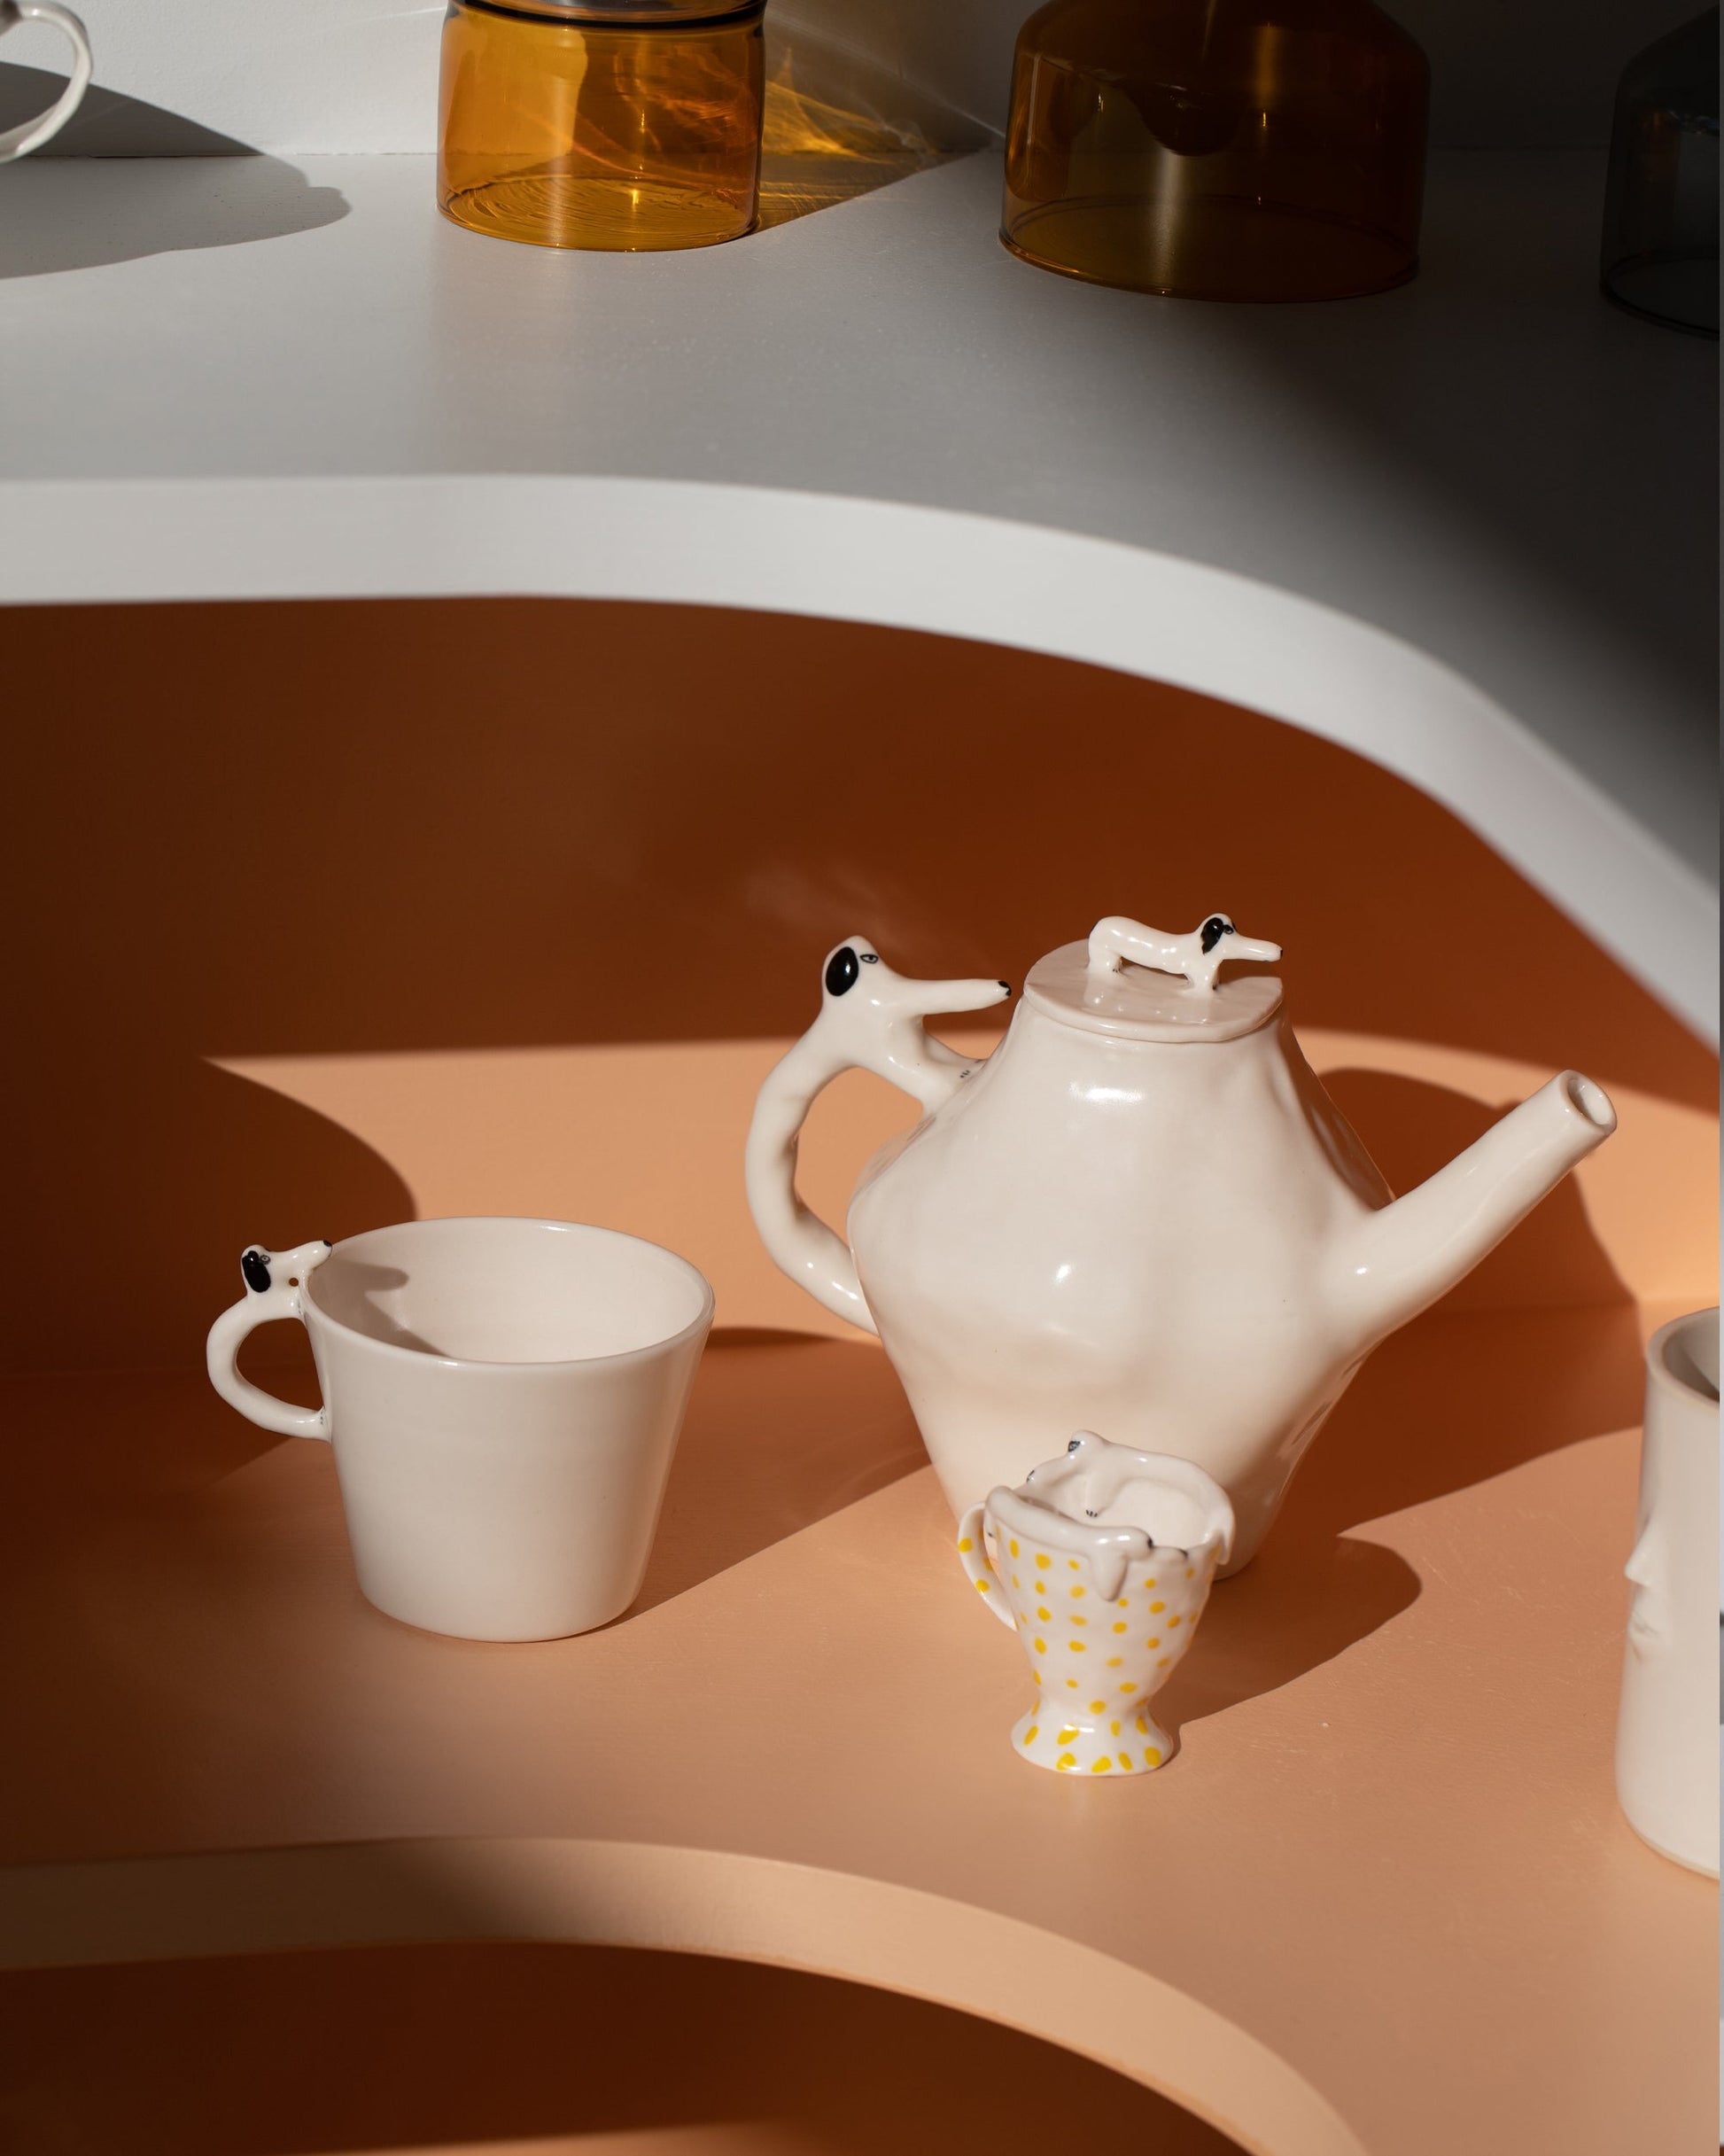 Styled image featuring the Eleonor Boström Mini Spotty Espresso Cup.